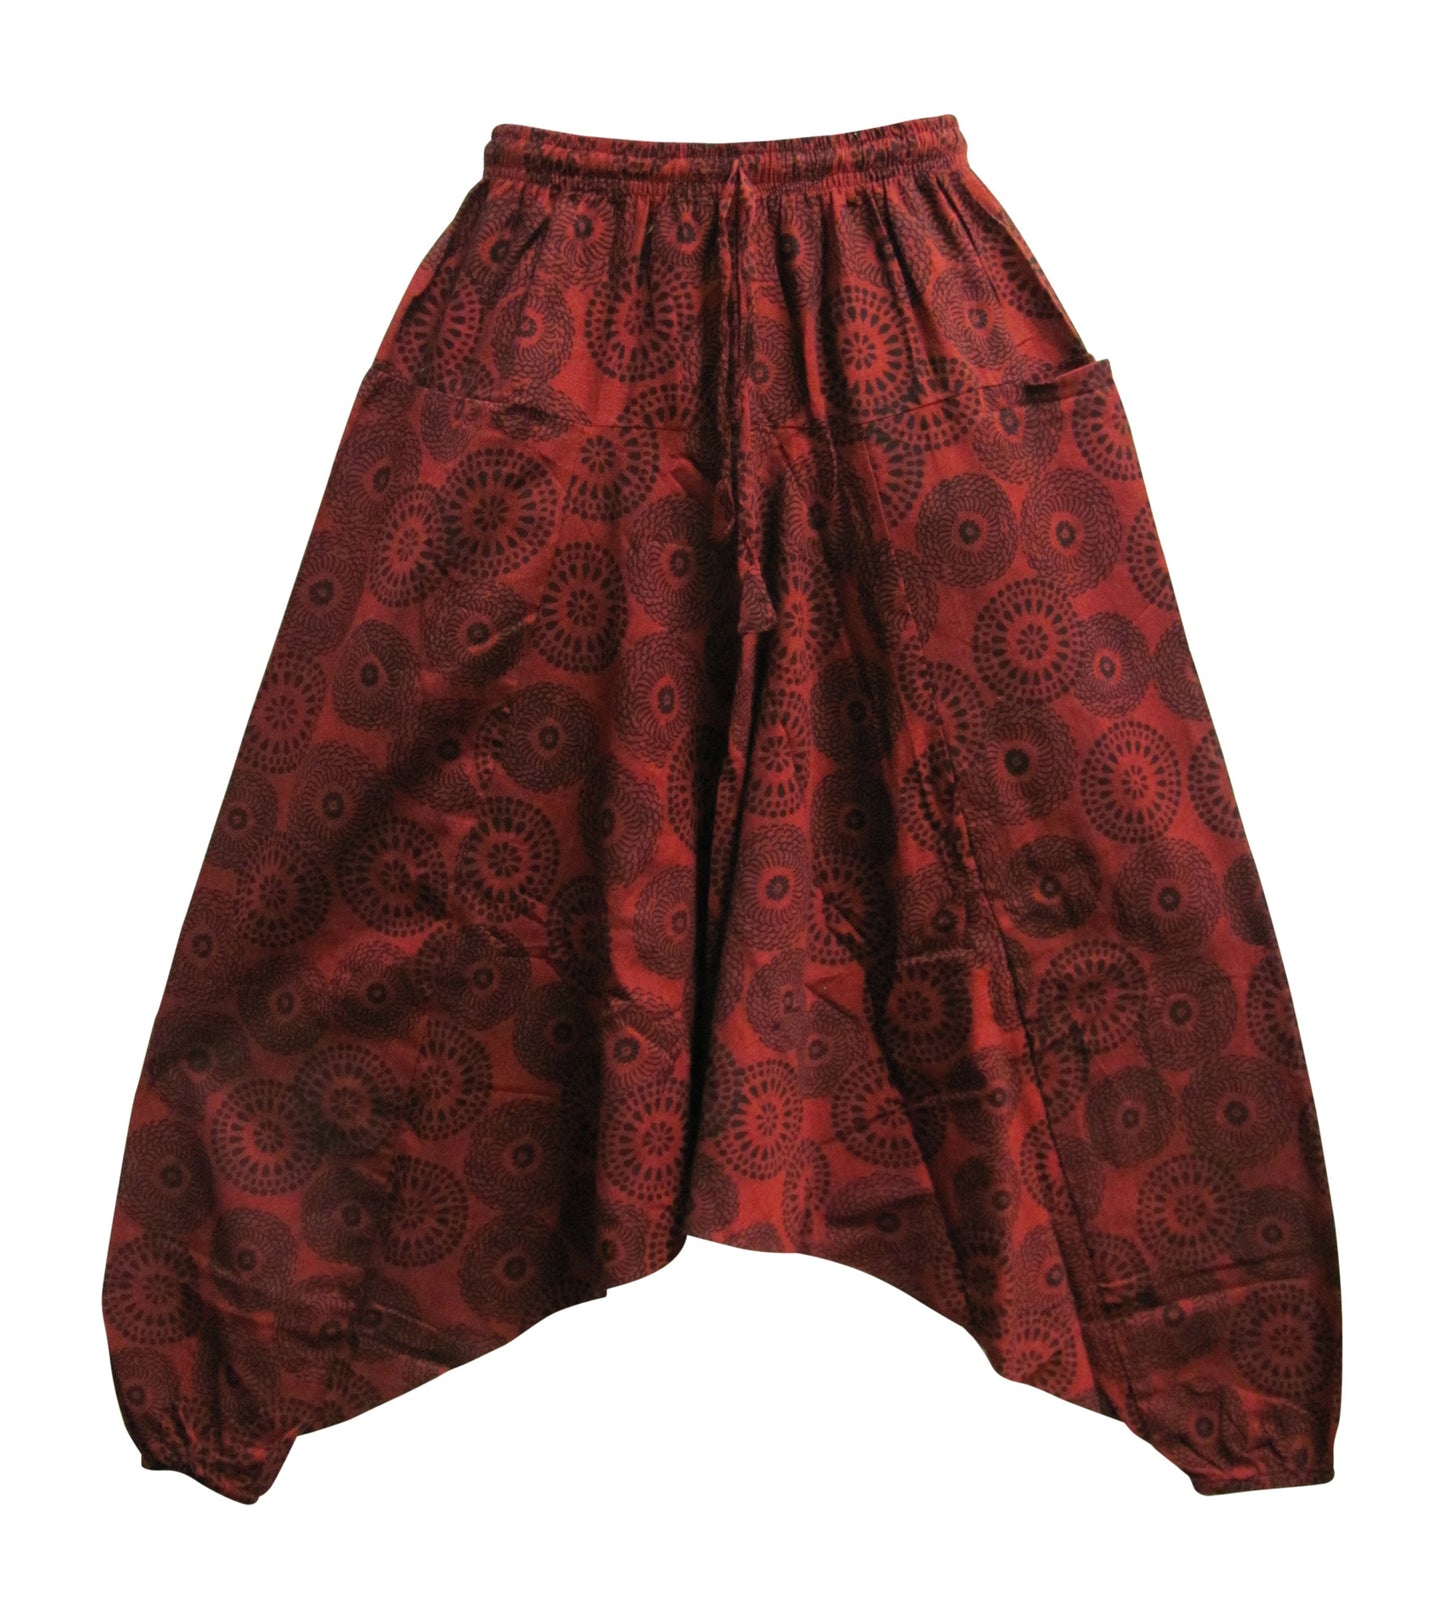 Men's Vintage Mandala Print Aladdin Alibaba Yoga Harem Pants Aashish - Ambali Fashion Unisex Pants 